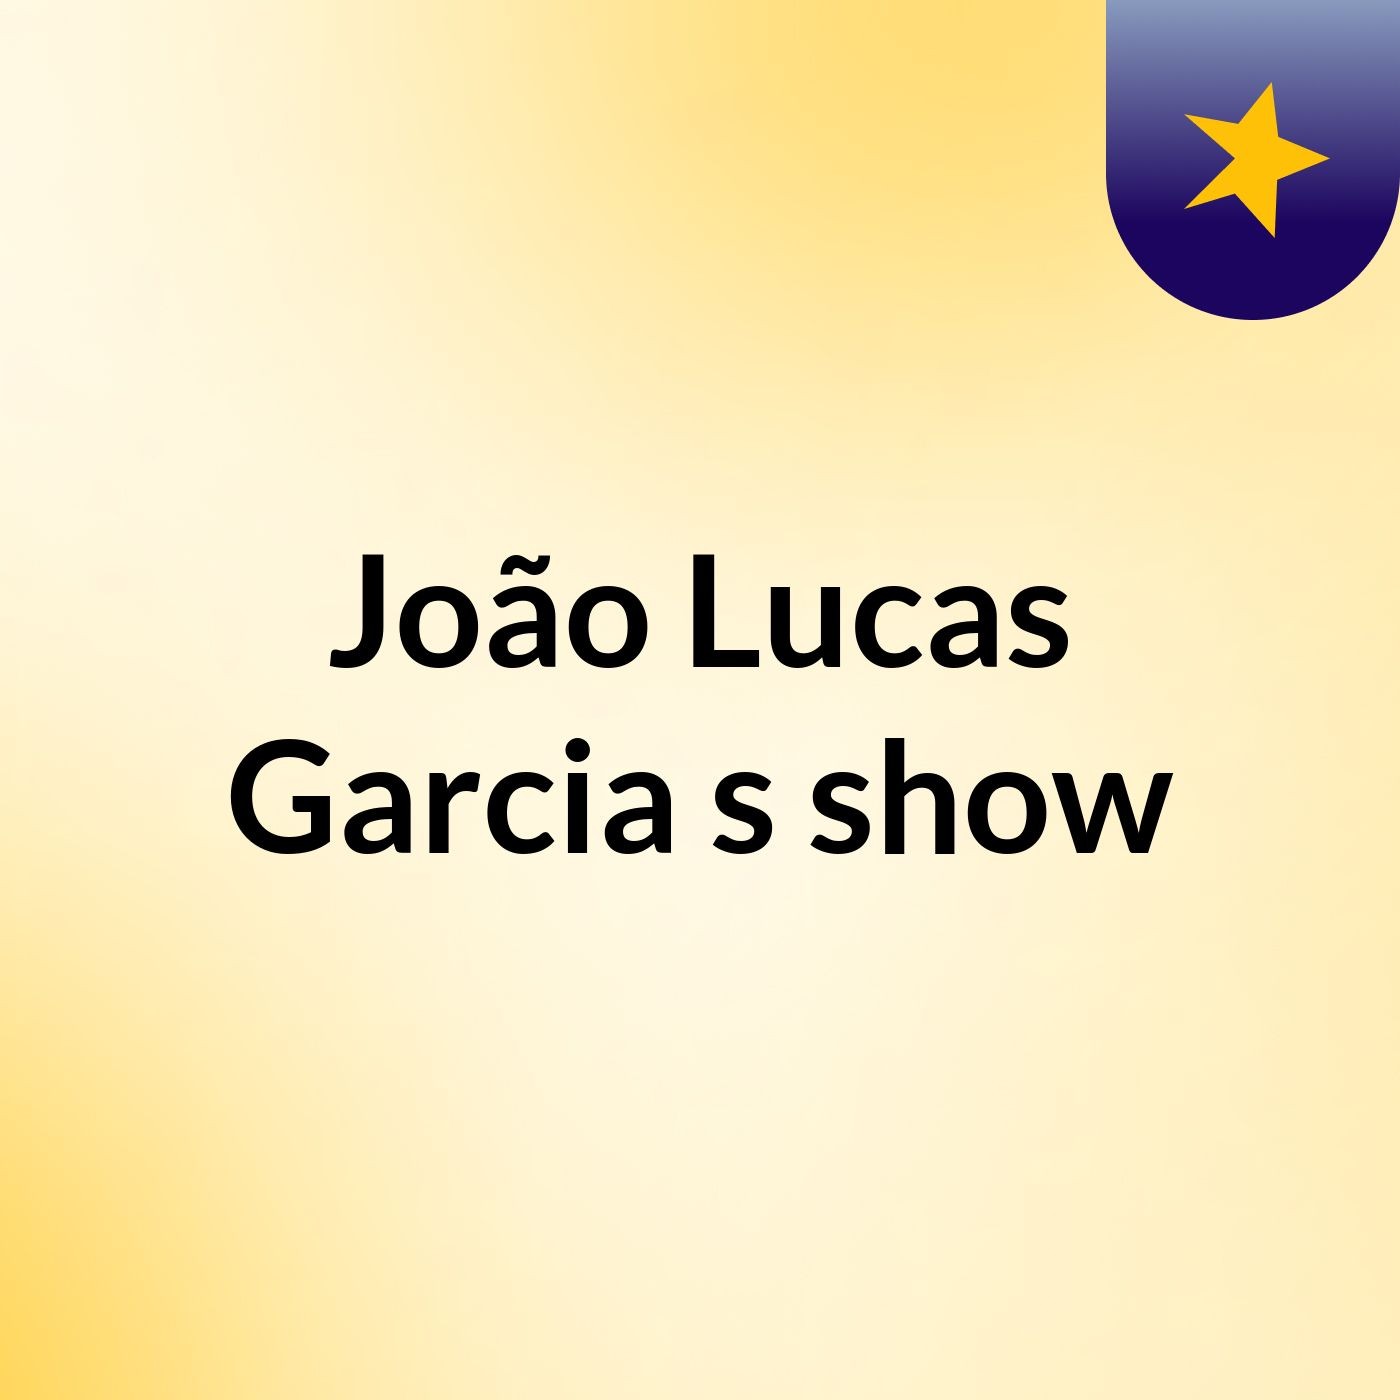 João Lucas Garcia's show